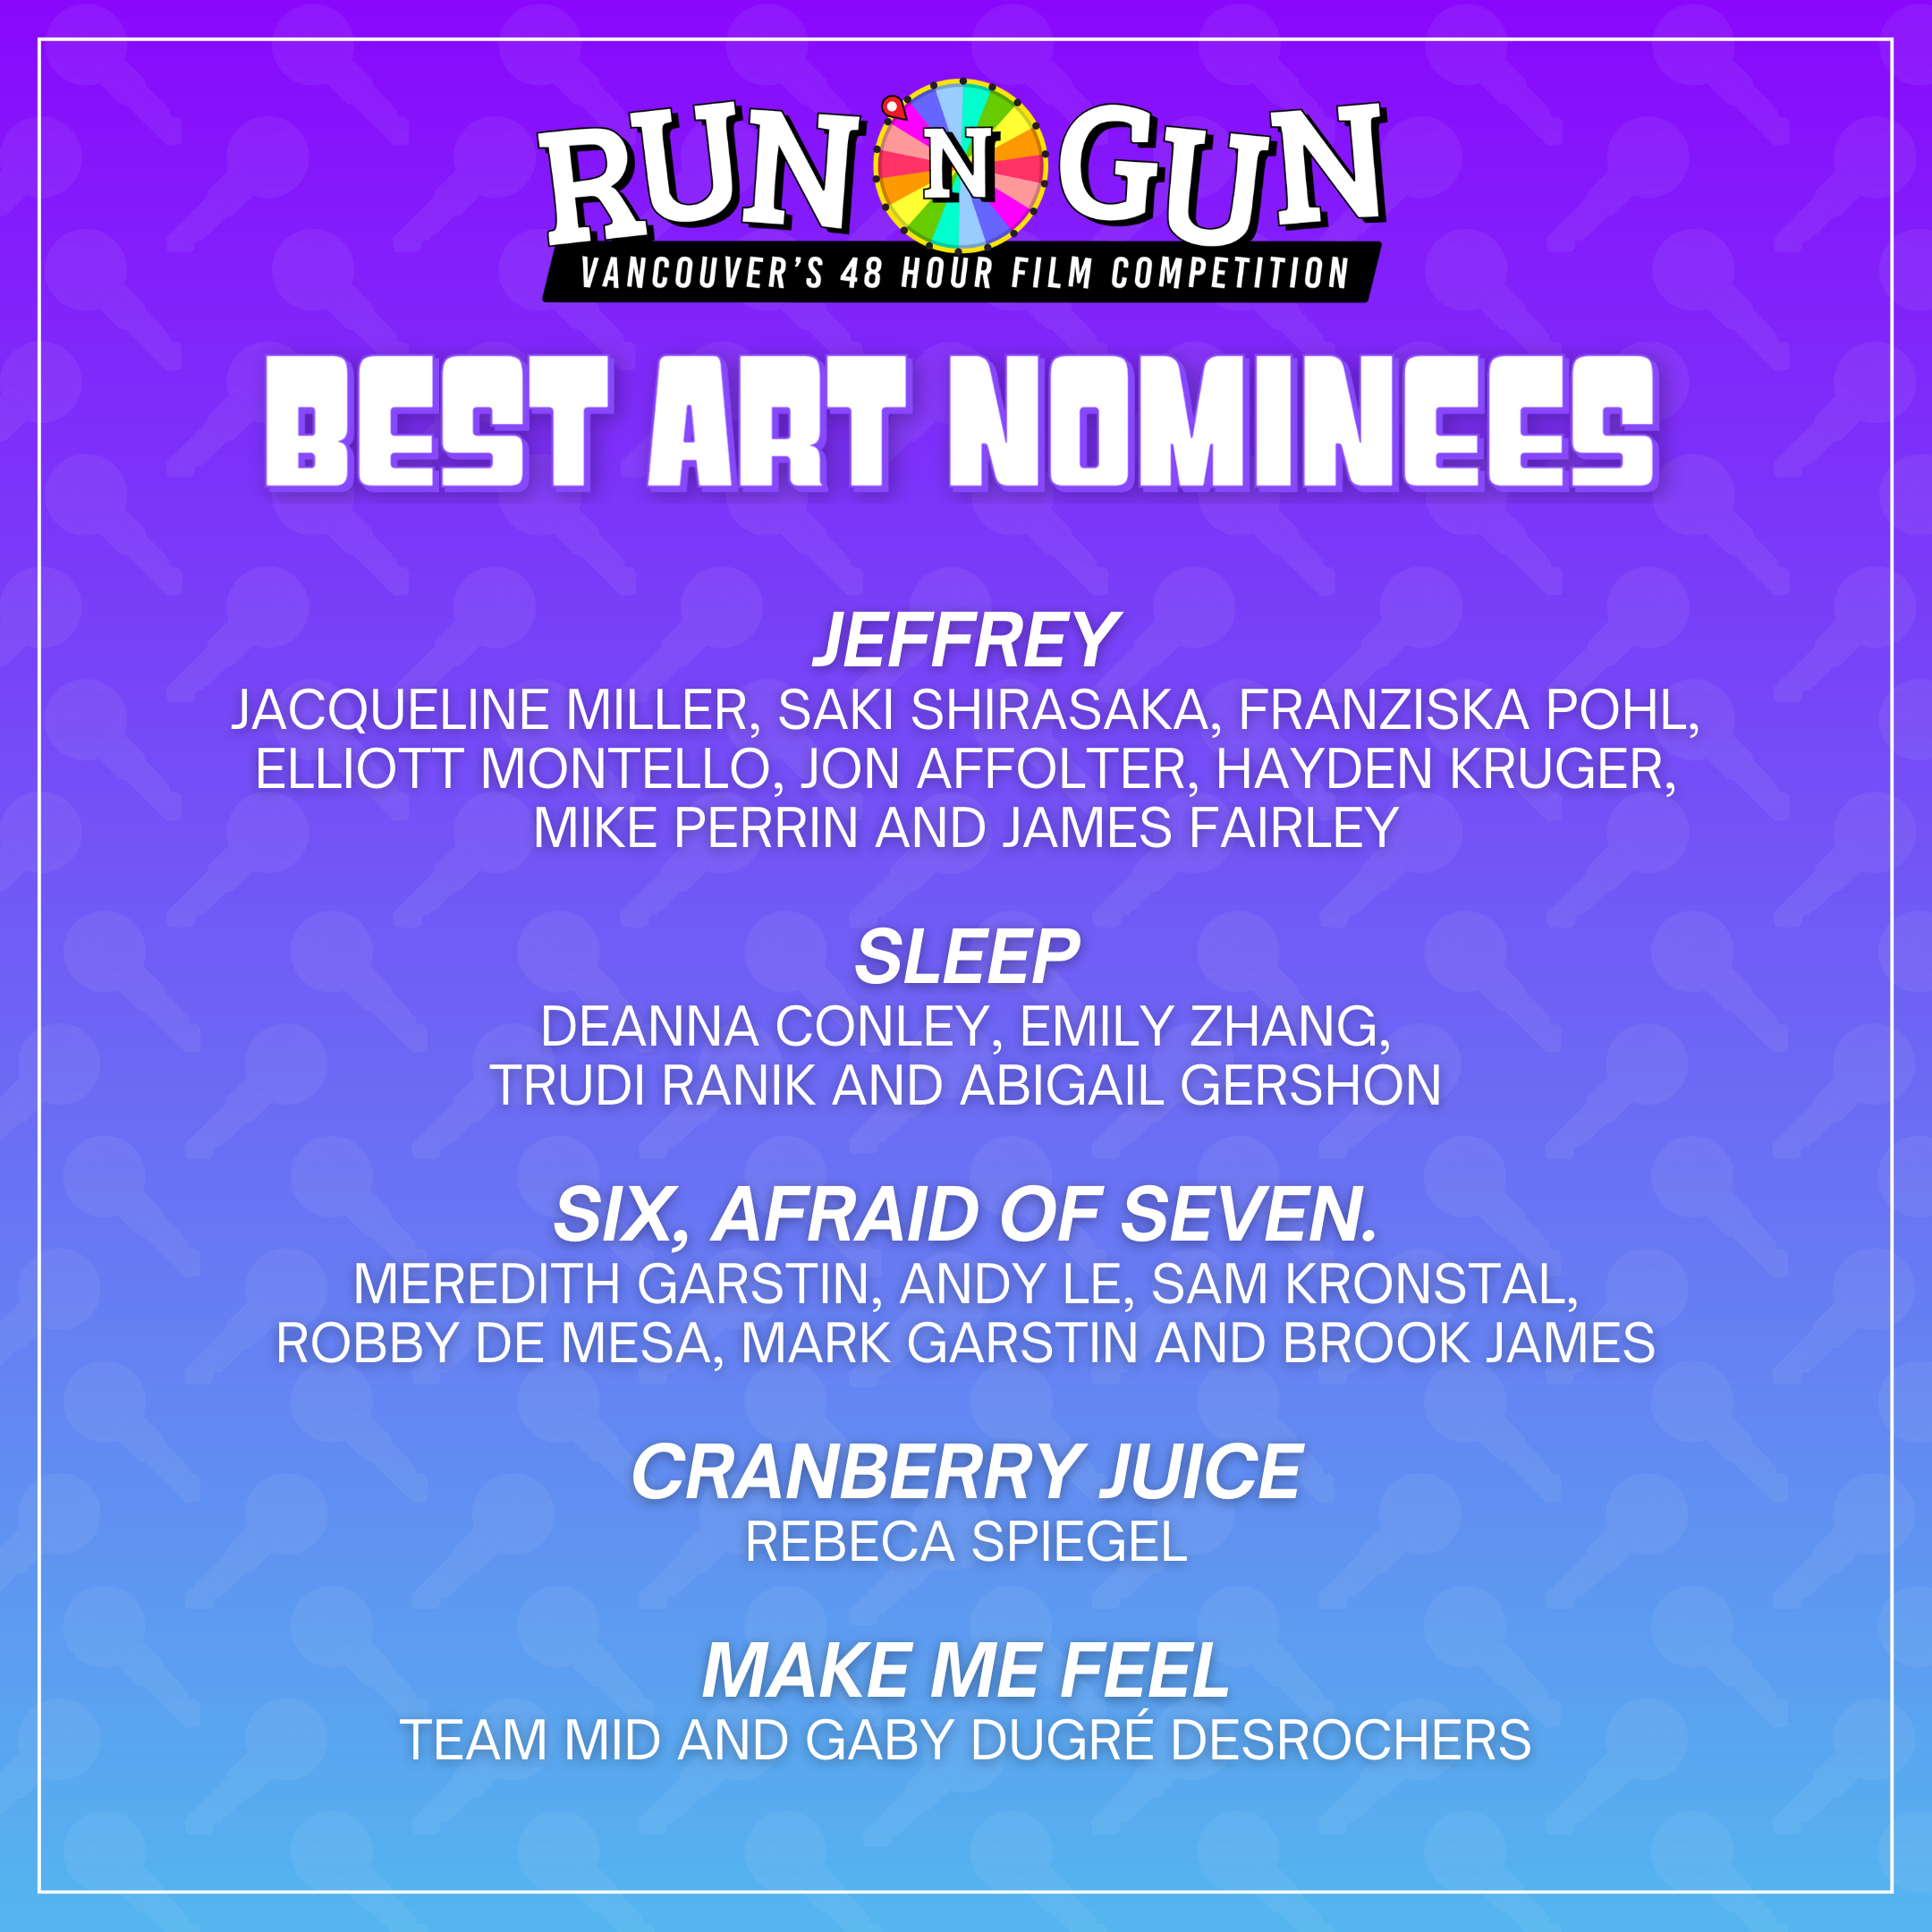 Best_Art_Nominees_1.png